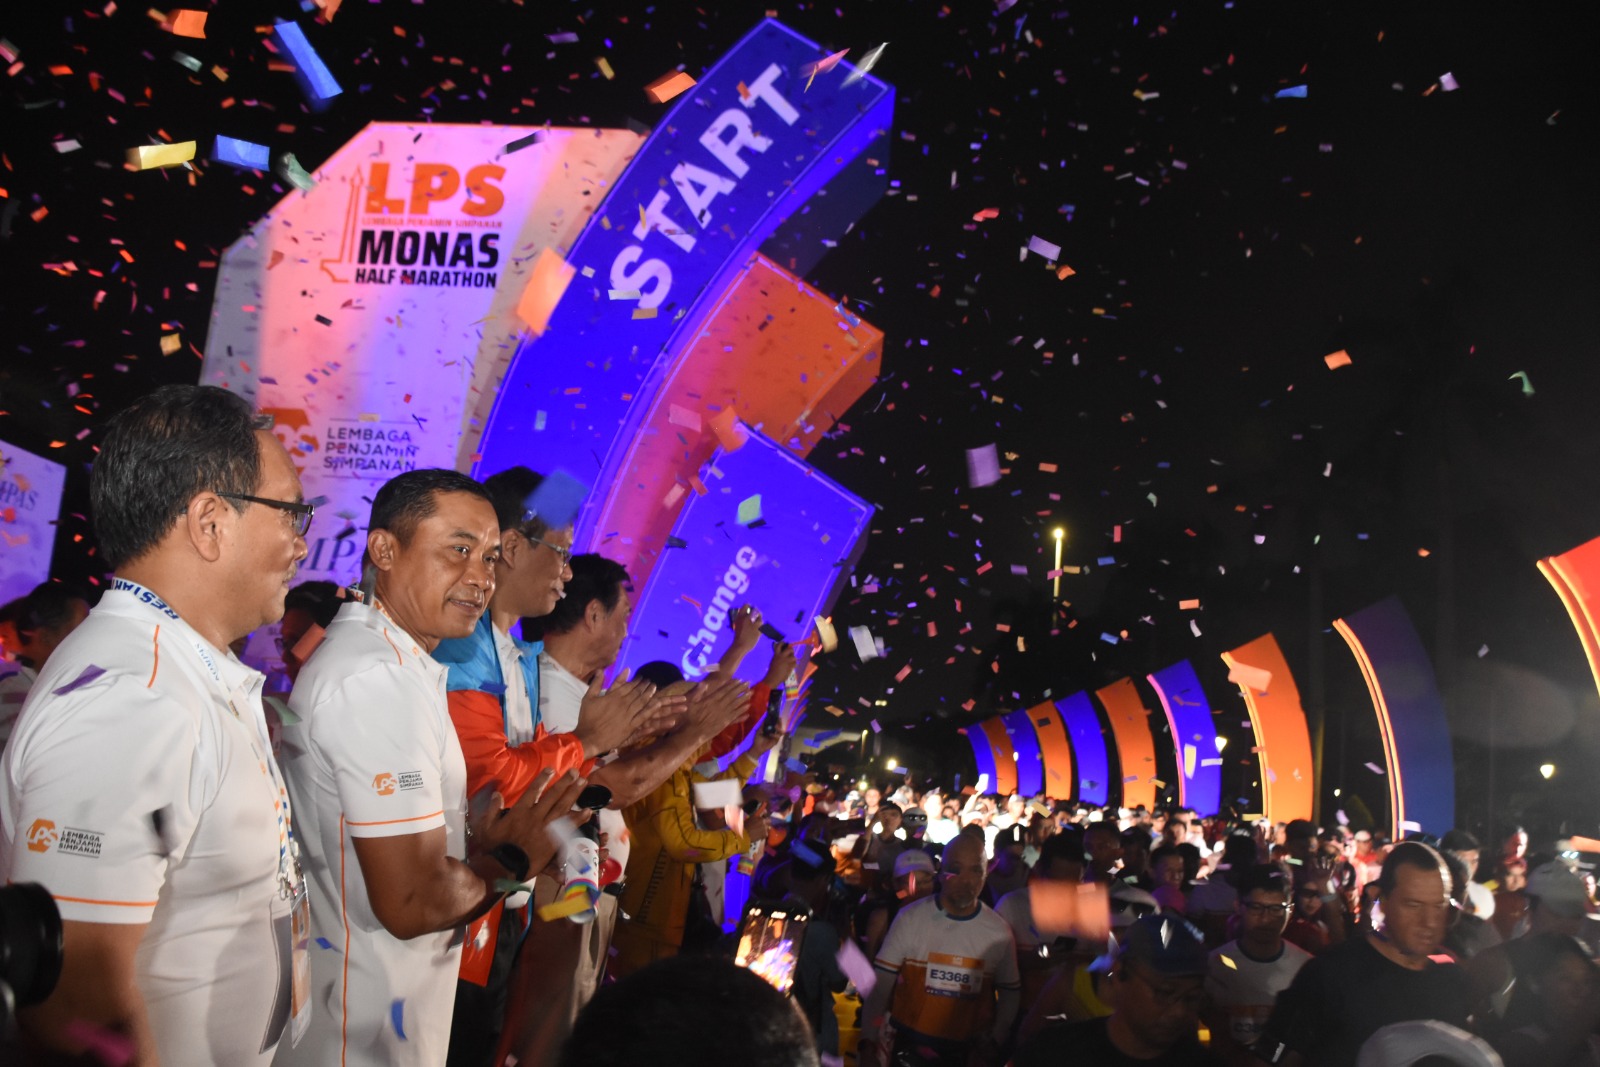 Pangdam Jaya Hadiri Run The City dan LPS Monas Half Marathon Dalam Rangka  HUT Kompas Grup